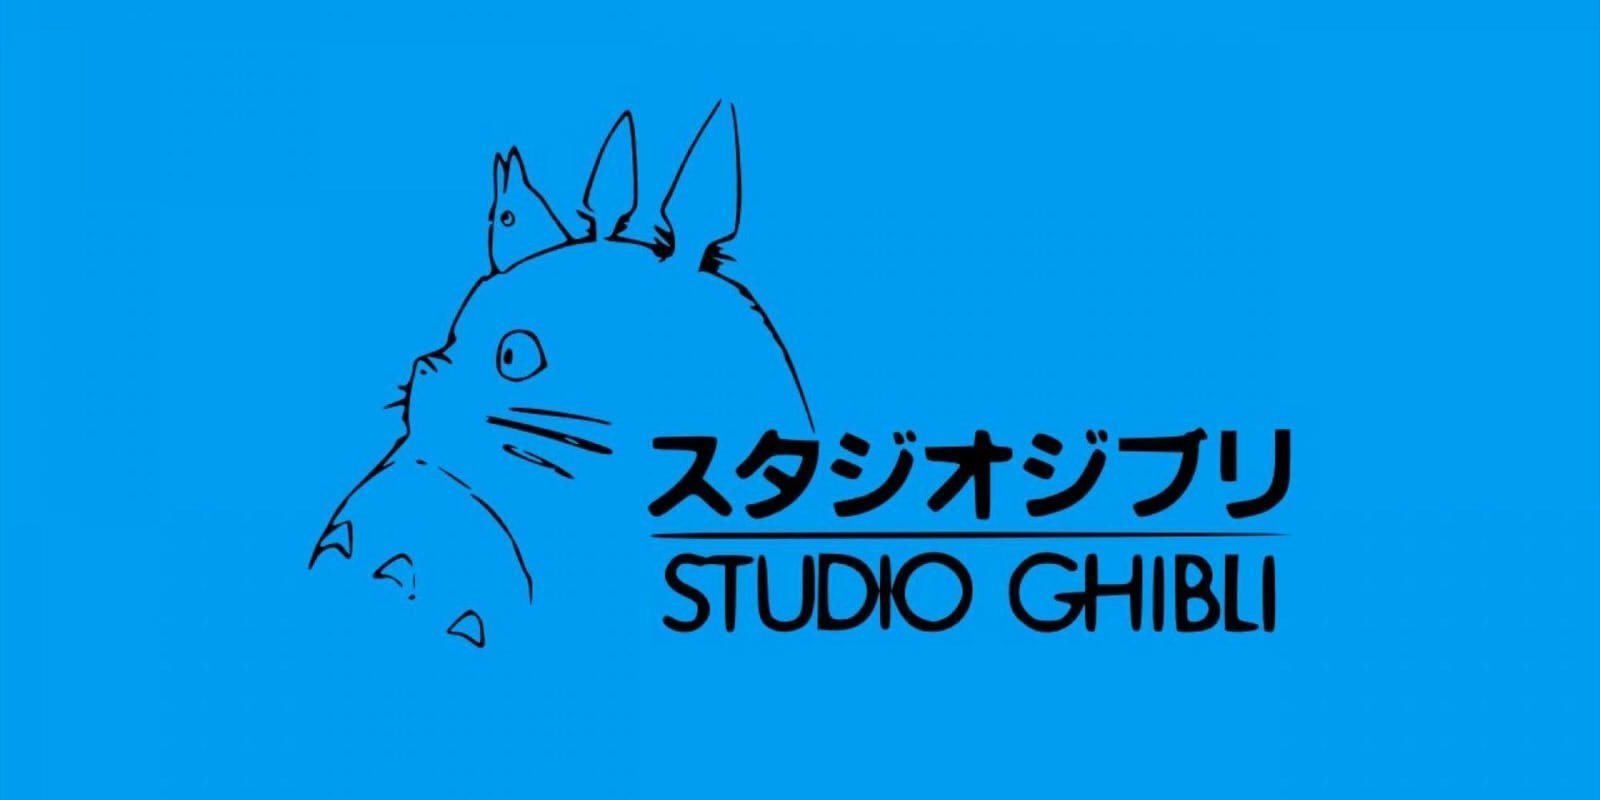 El parque temático de Studio Ghibli anuncia su apertura con estas imágenes